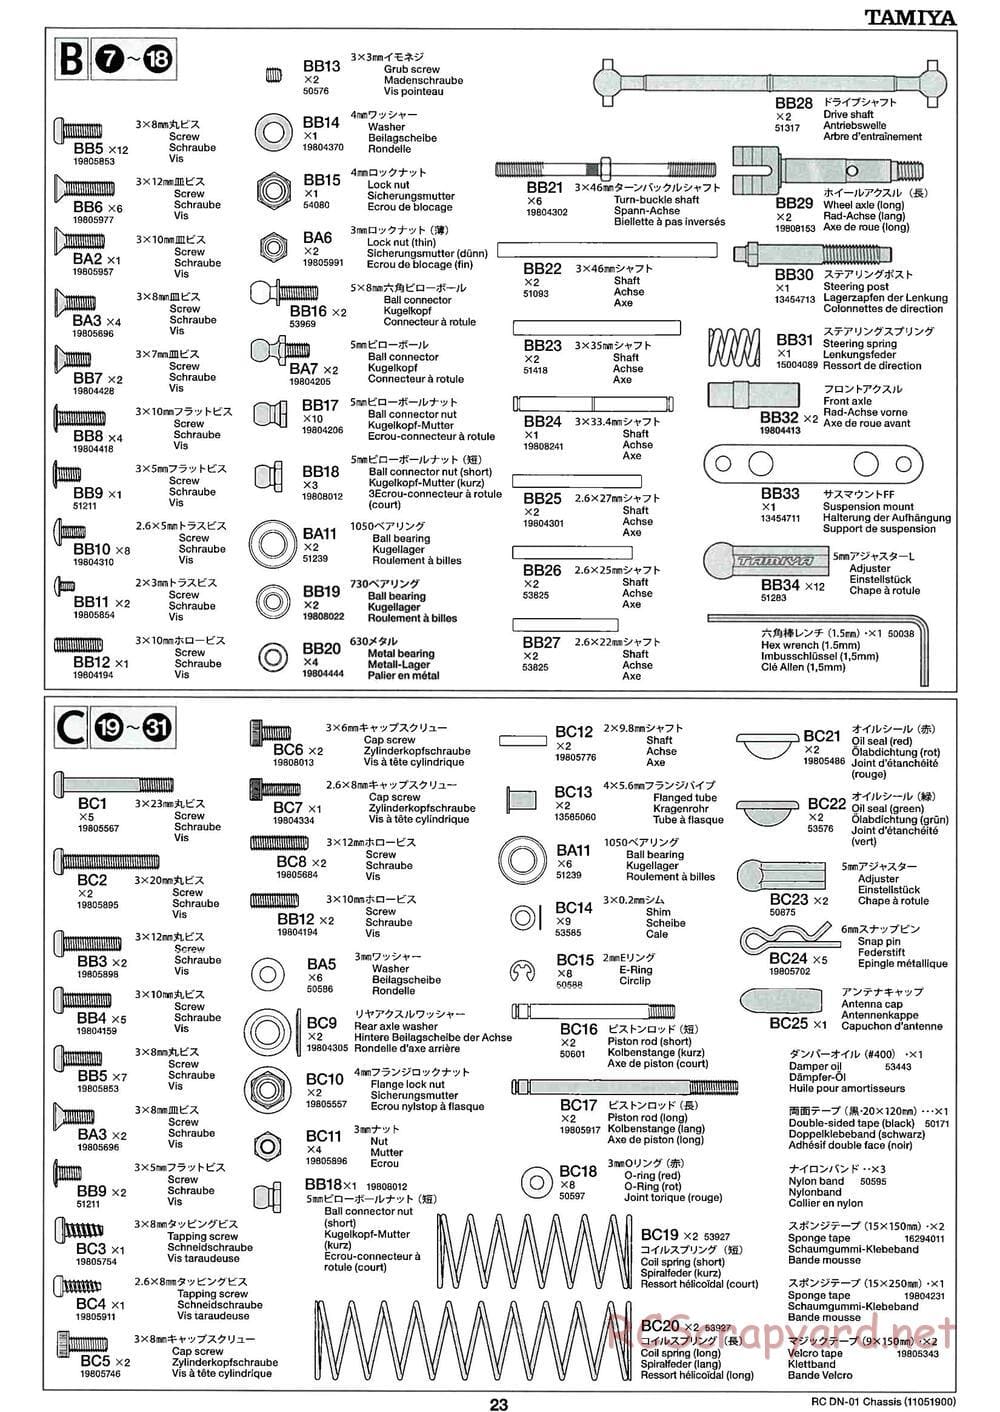 Tamiya - DN-01 Chassis - Manual - Page 23